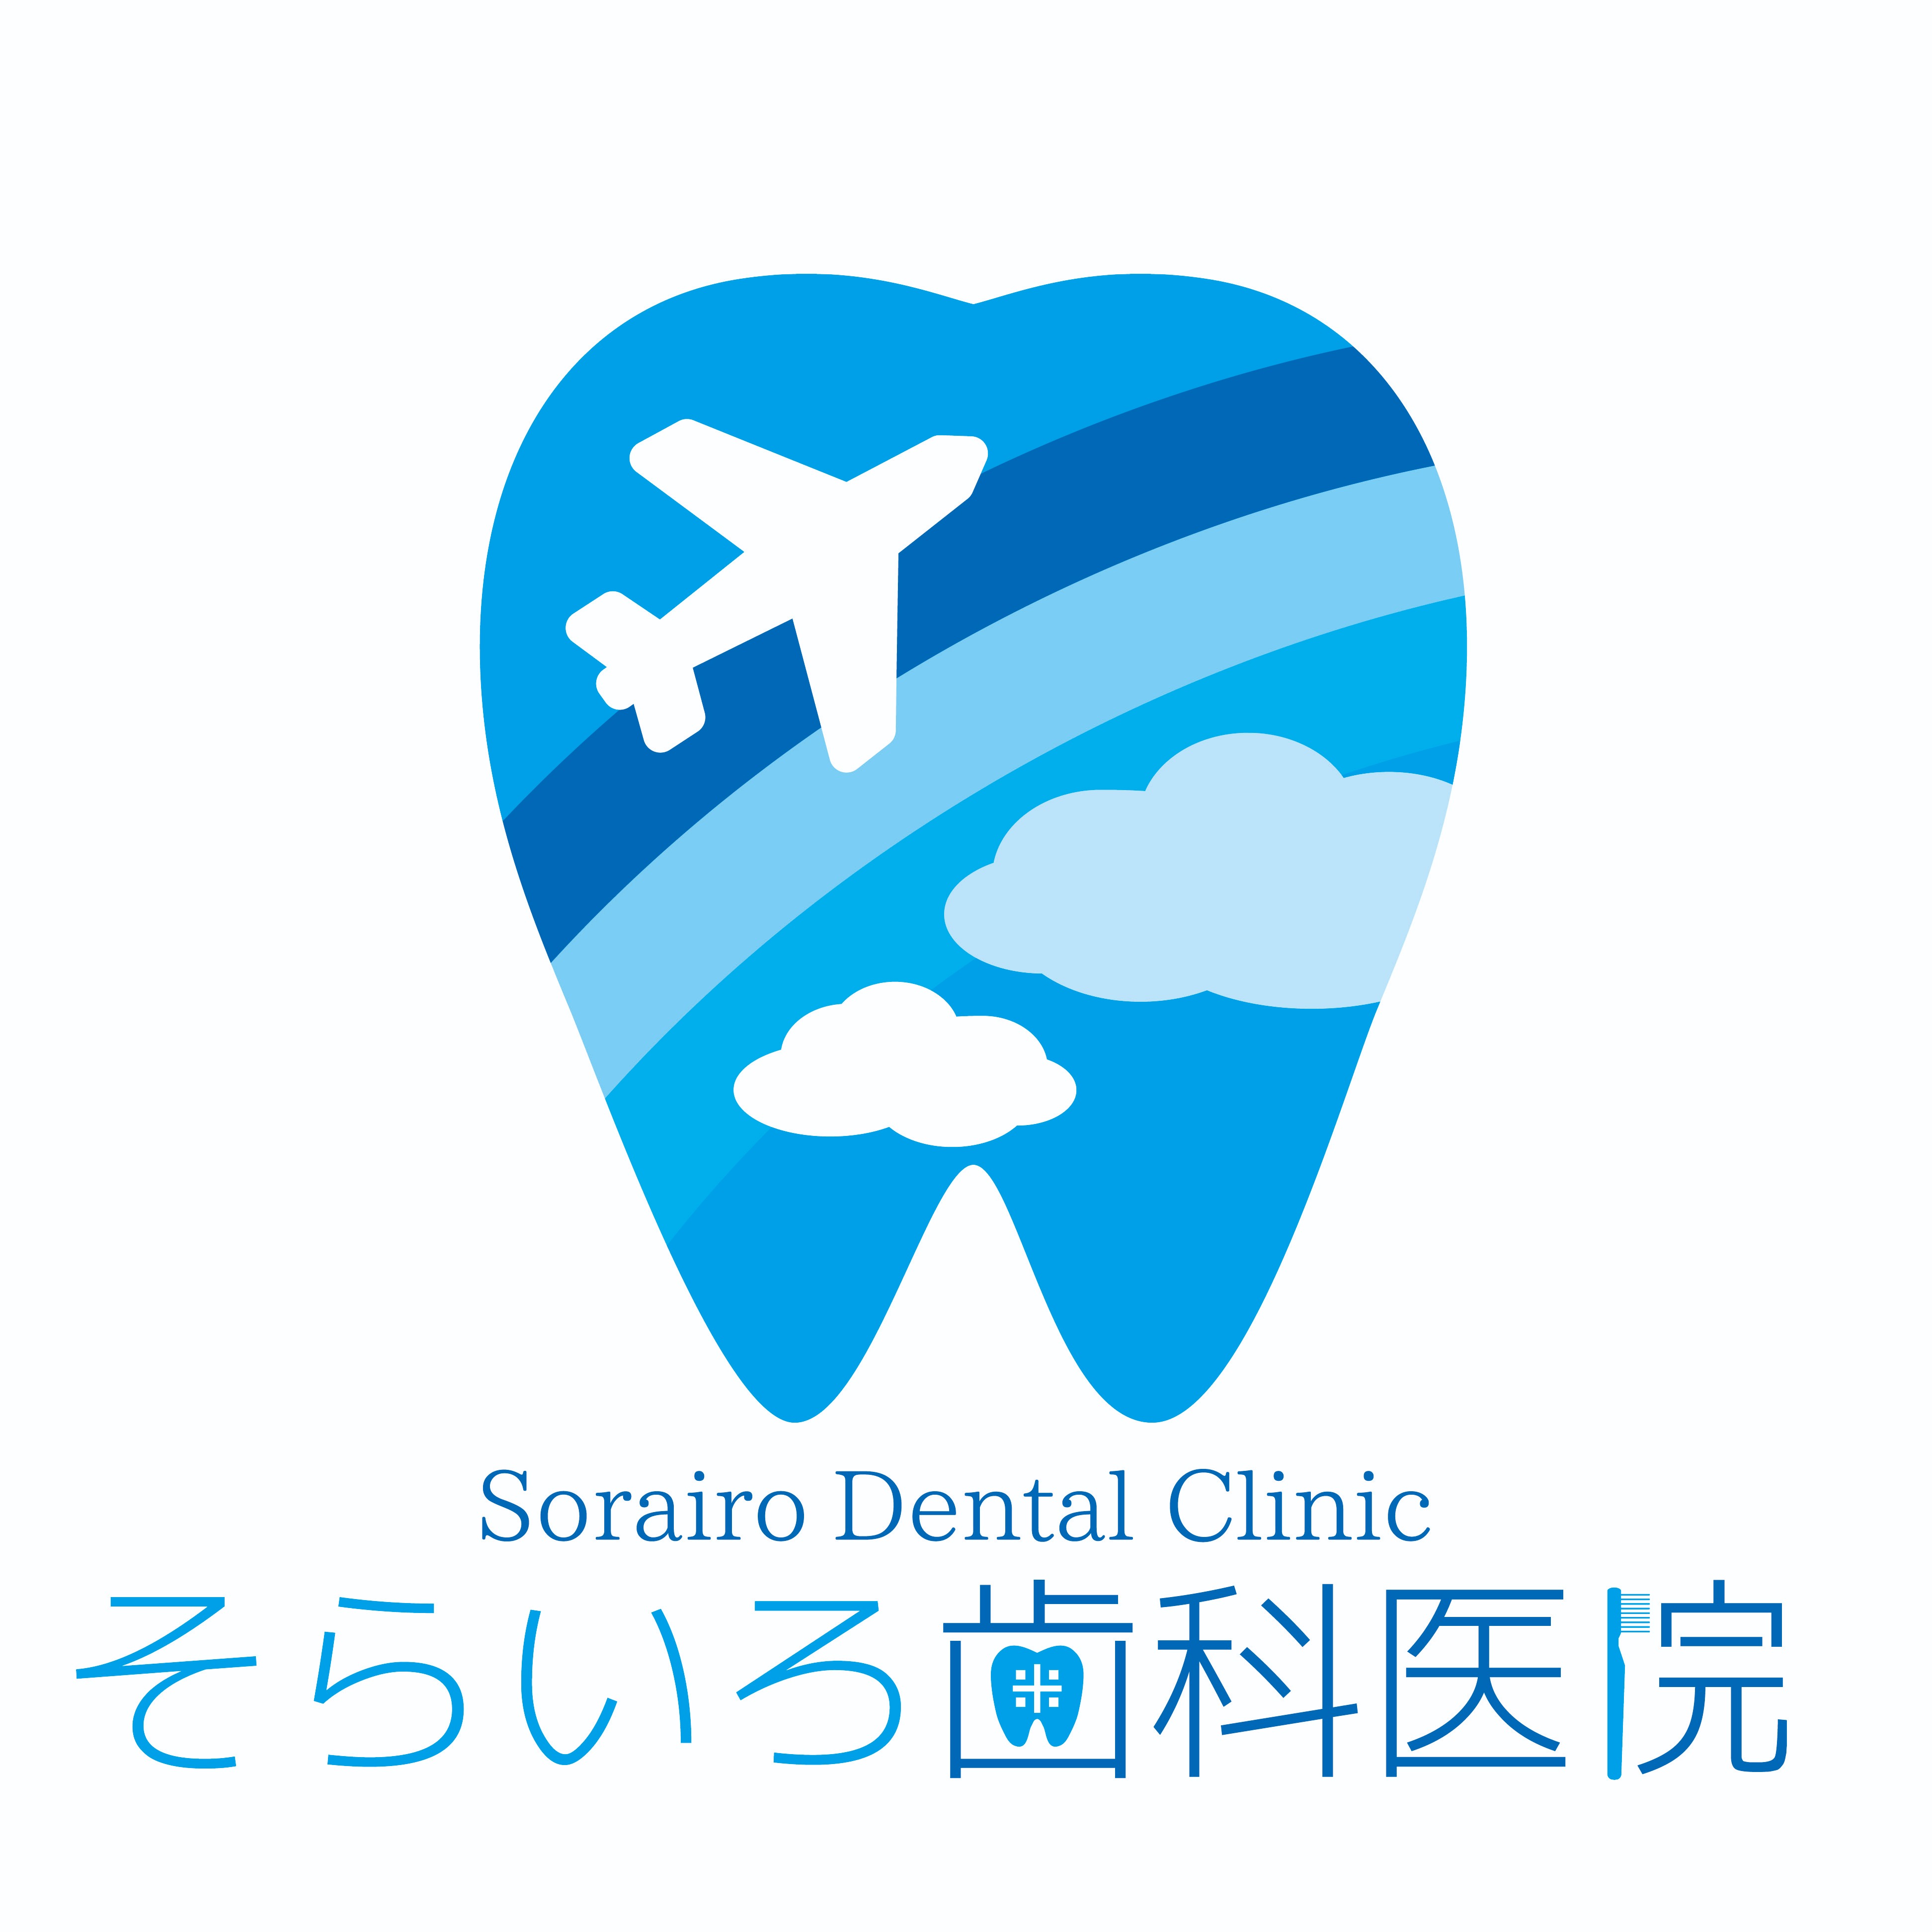 そらいろ歯科医院 Logo